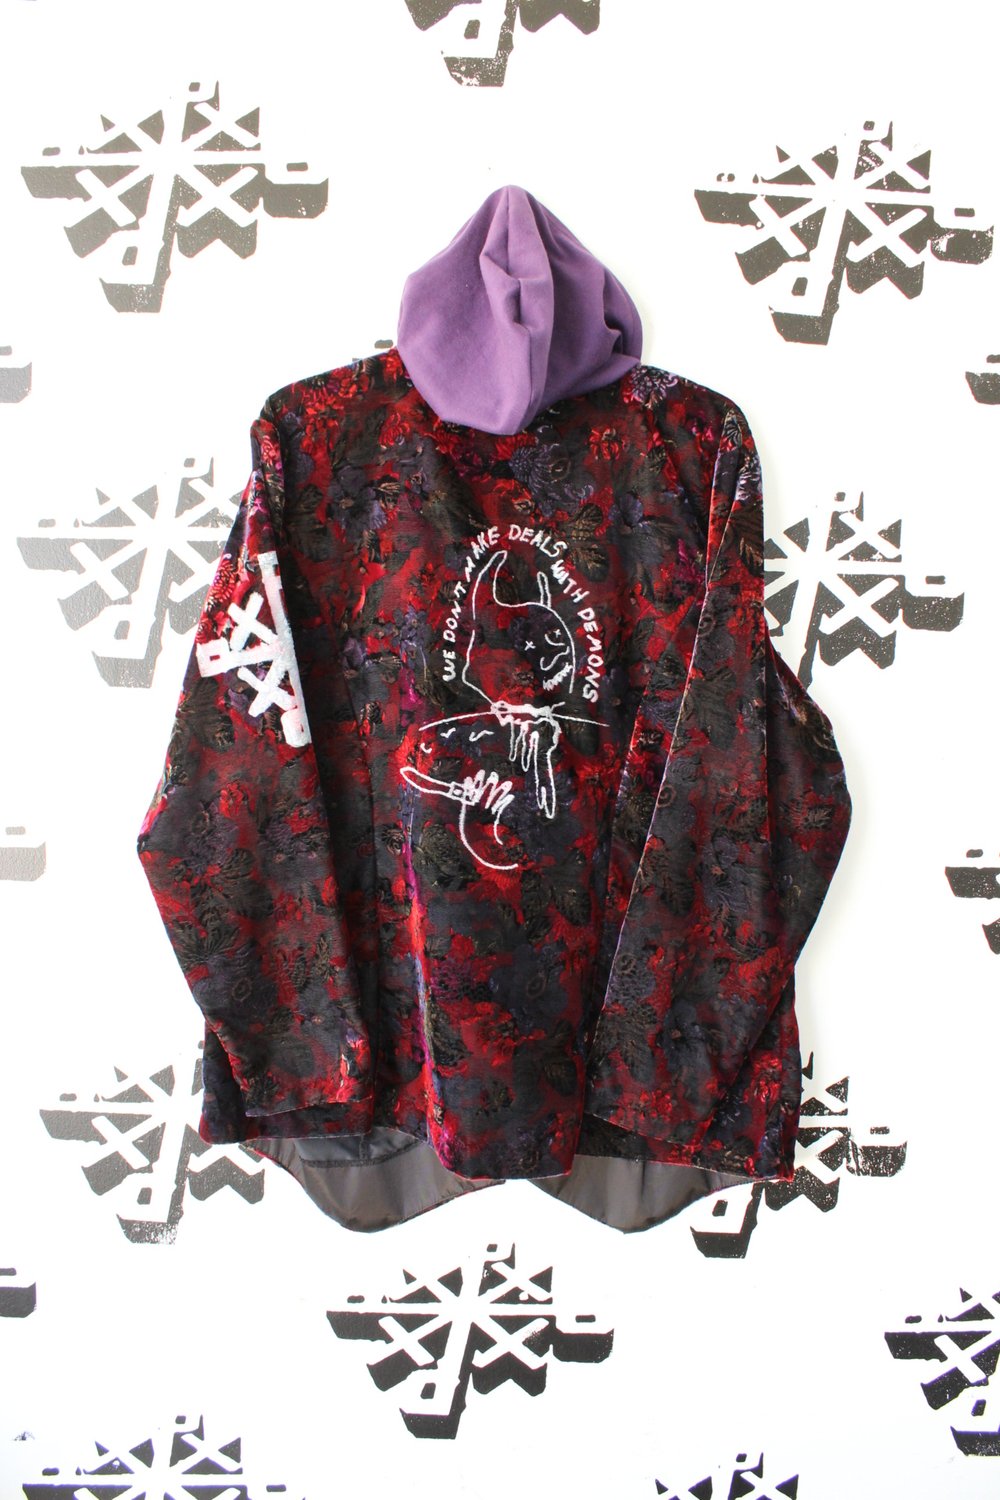 we don’t make deals with demons floral patterned velvet jacket 